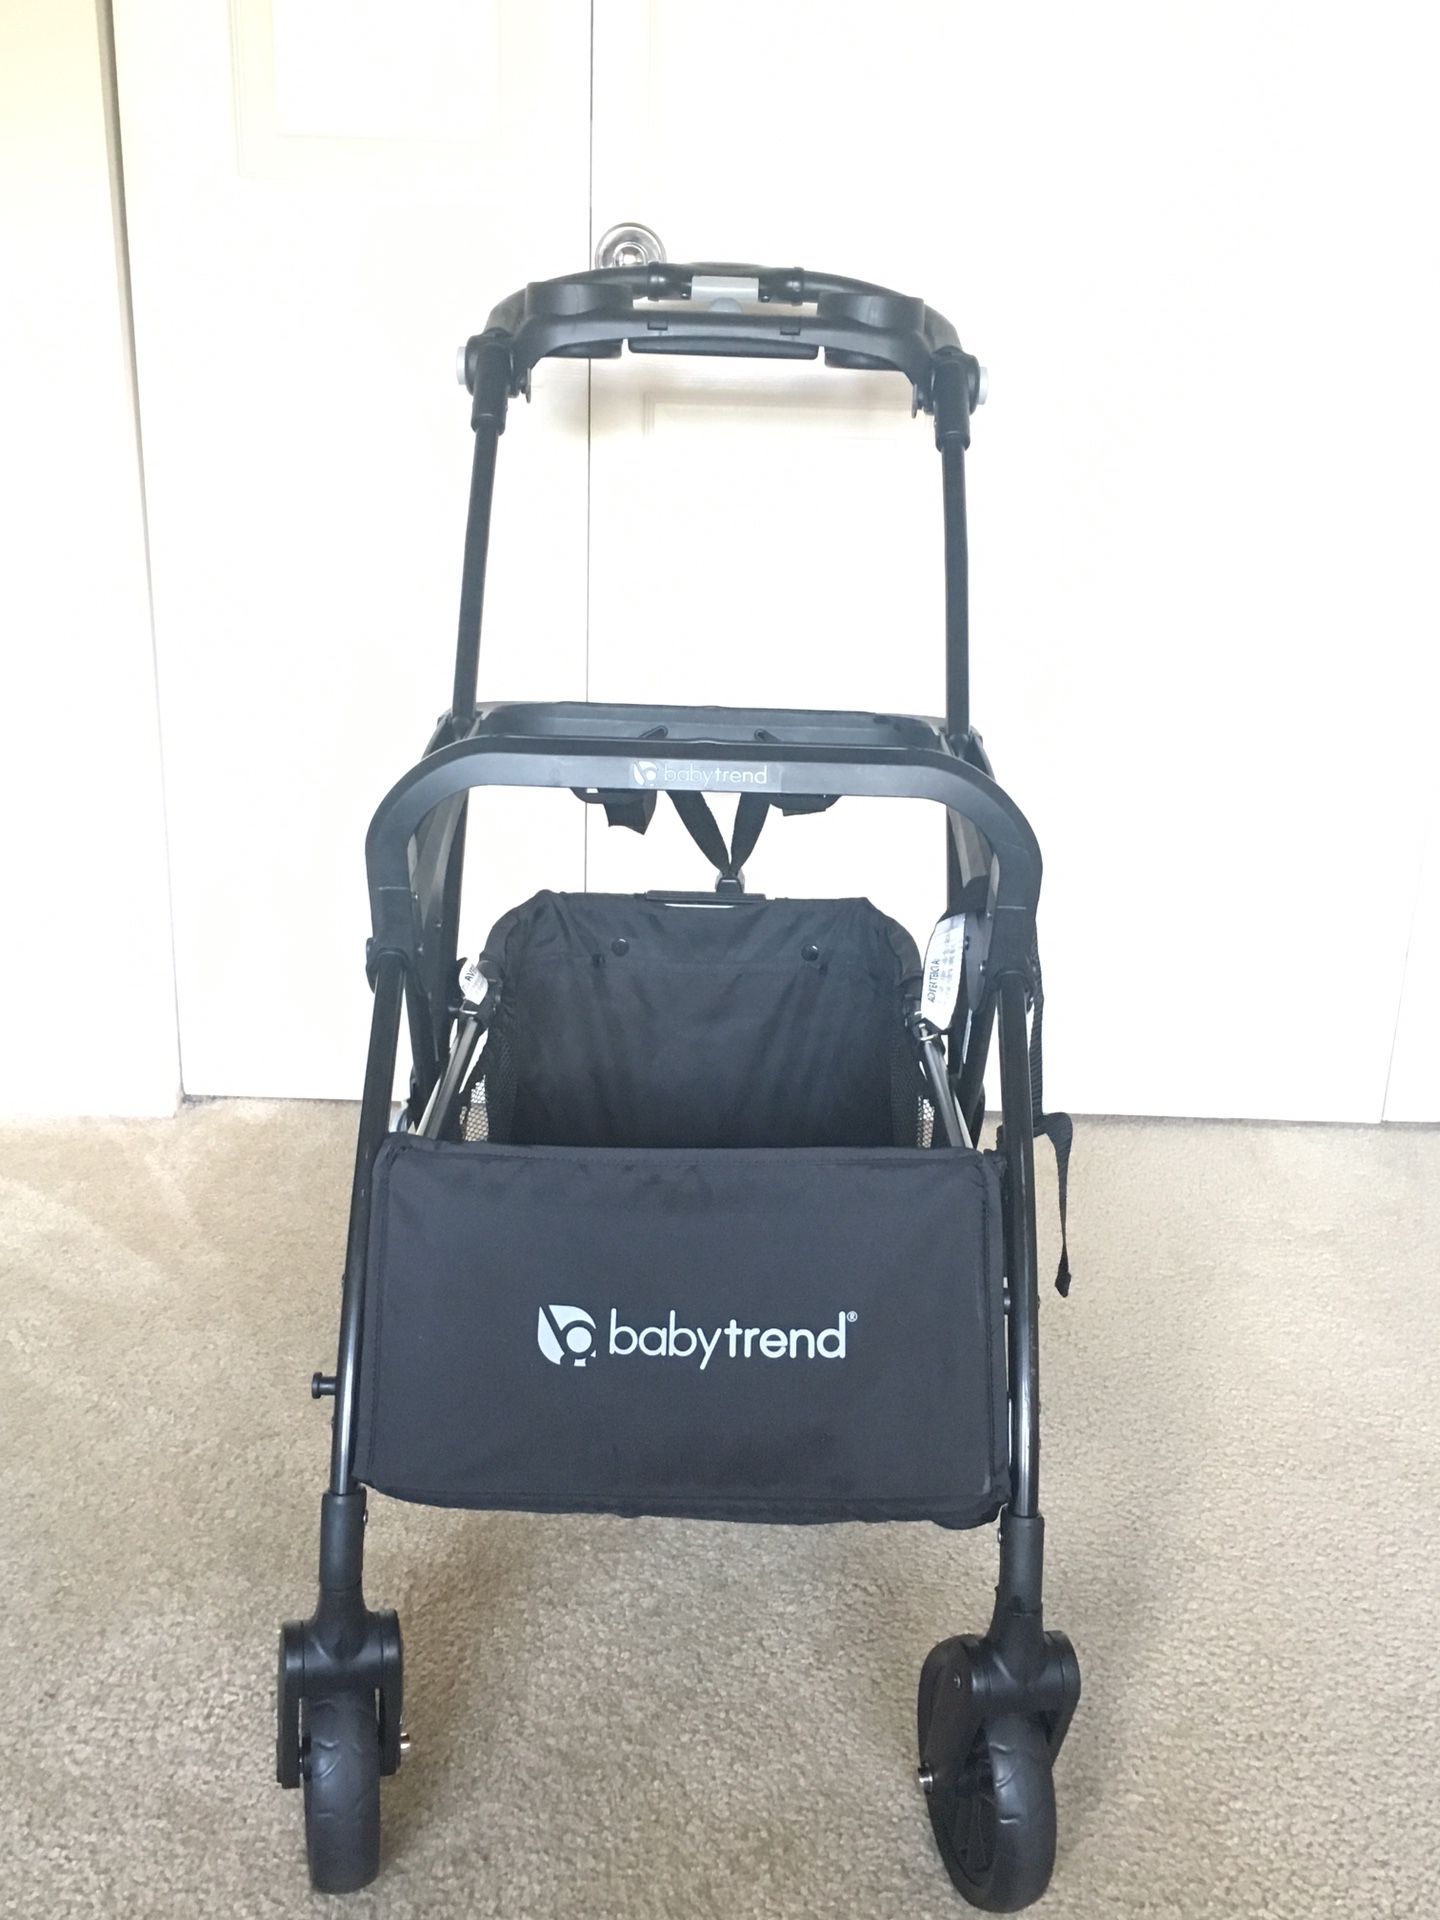 Babytrend Snap n’ Go infant car seat carrier